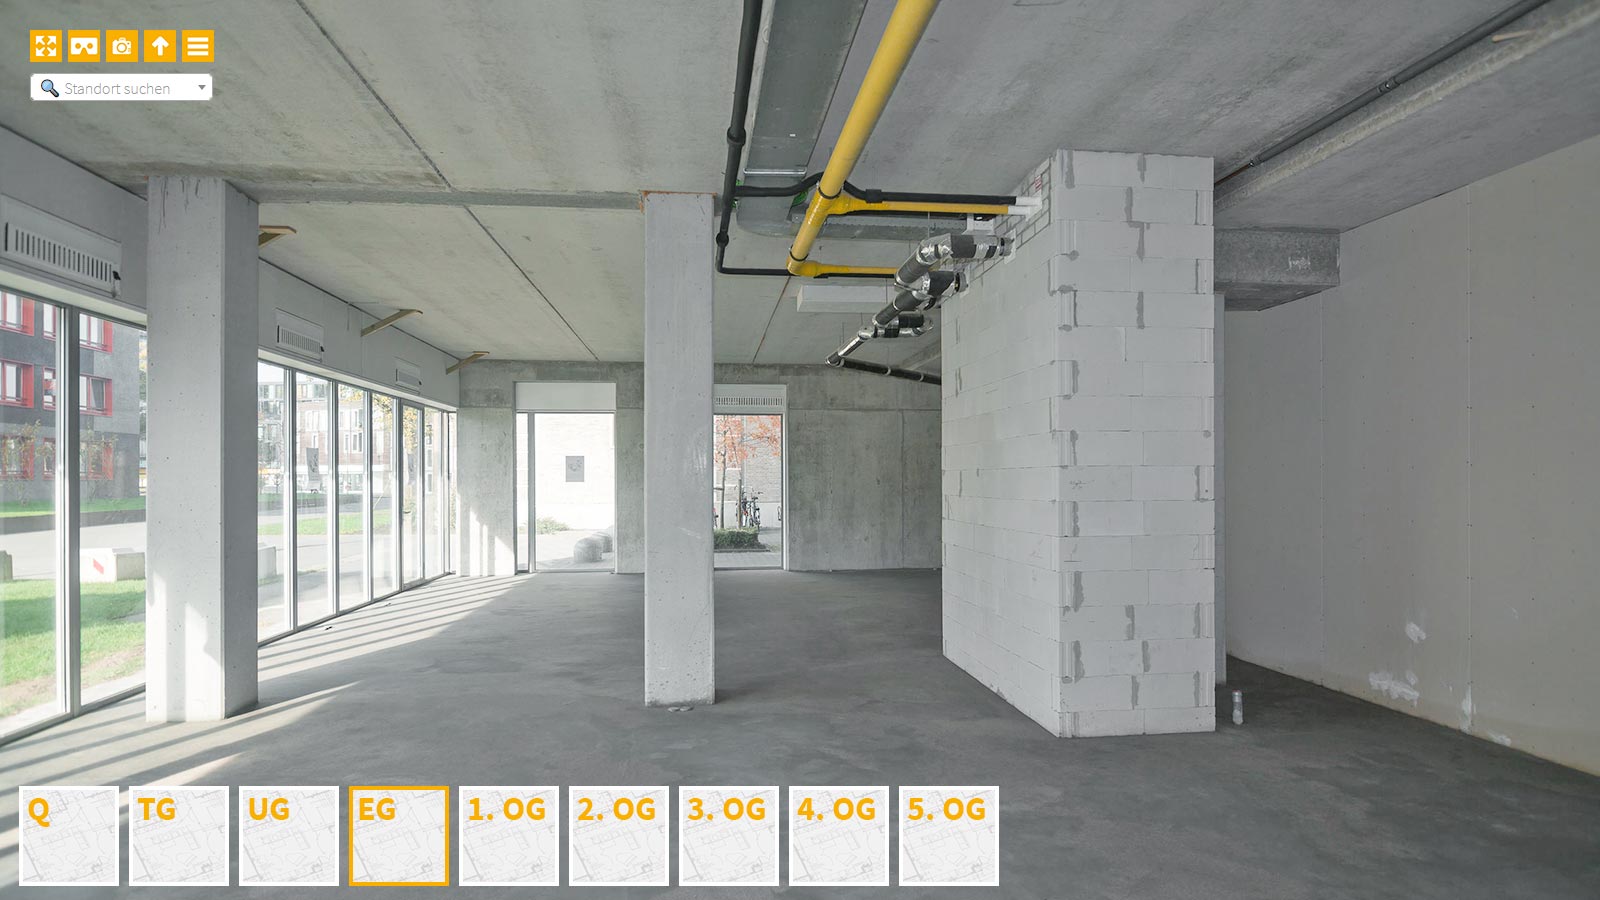 Baudokumentation 360 Grad bei gestörten Projekten in 


	


	


	


	


	


	


	


	


	


	Lübeck









, Bilddokumentation als virtueller Rundgang